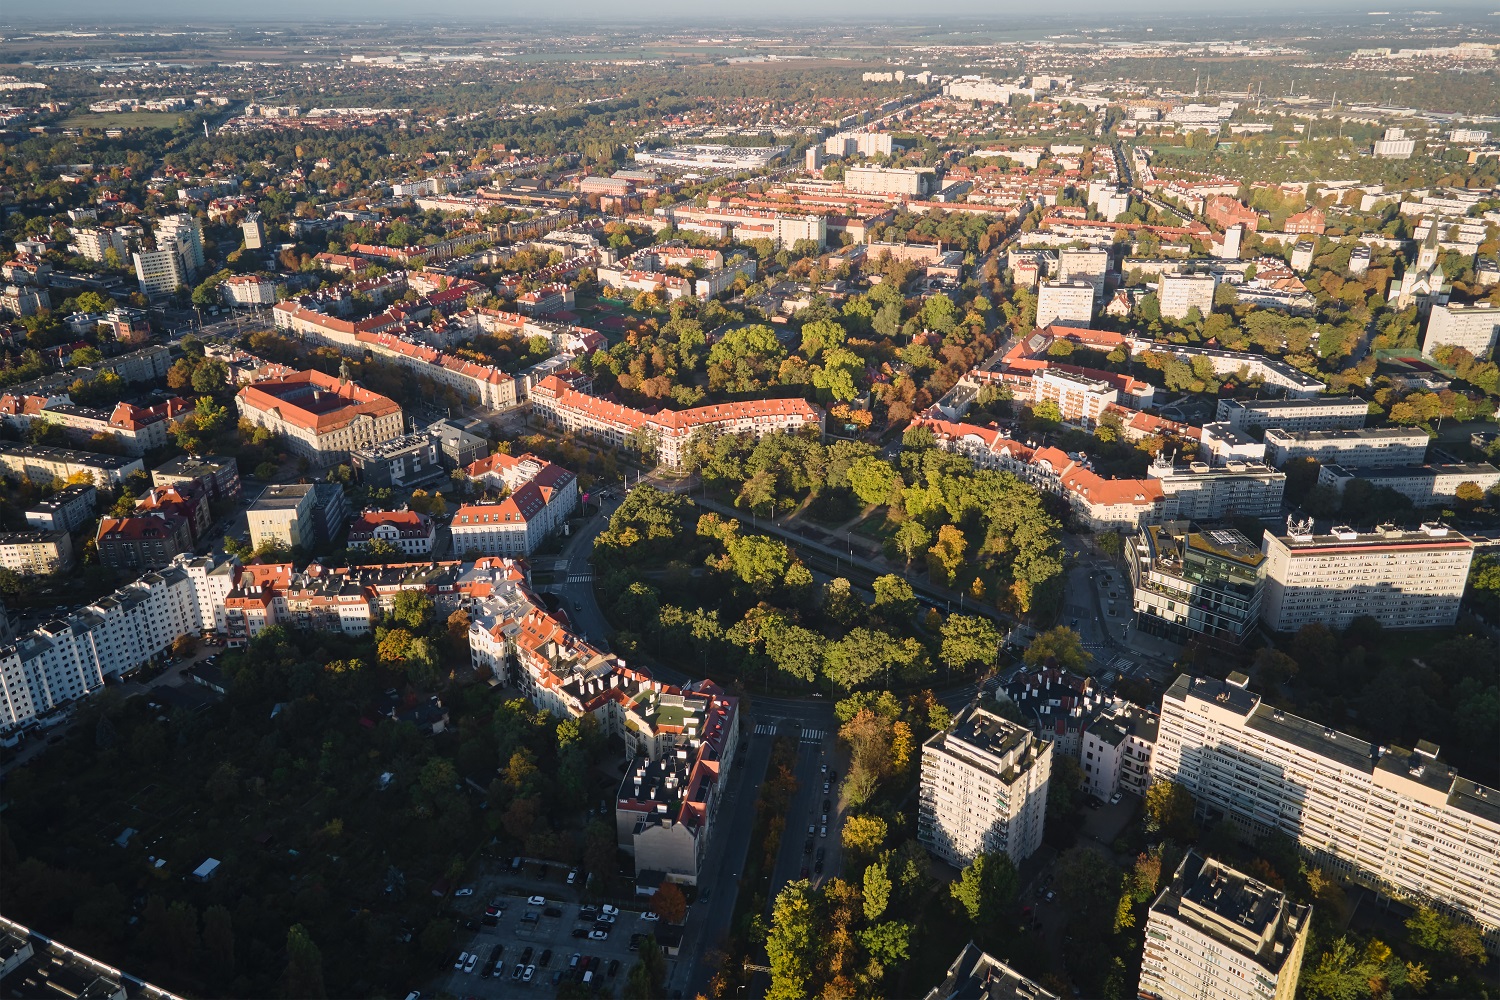 Widok z powietrza na dzielnicę bloków we Wrocławiu, z dużą ilością zieleni